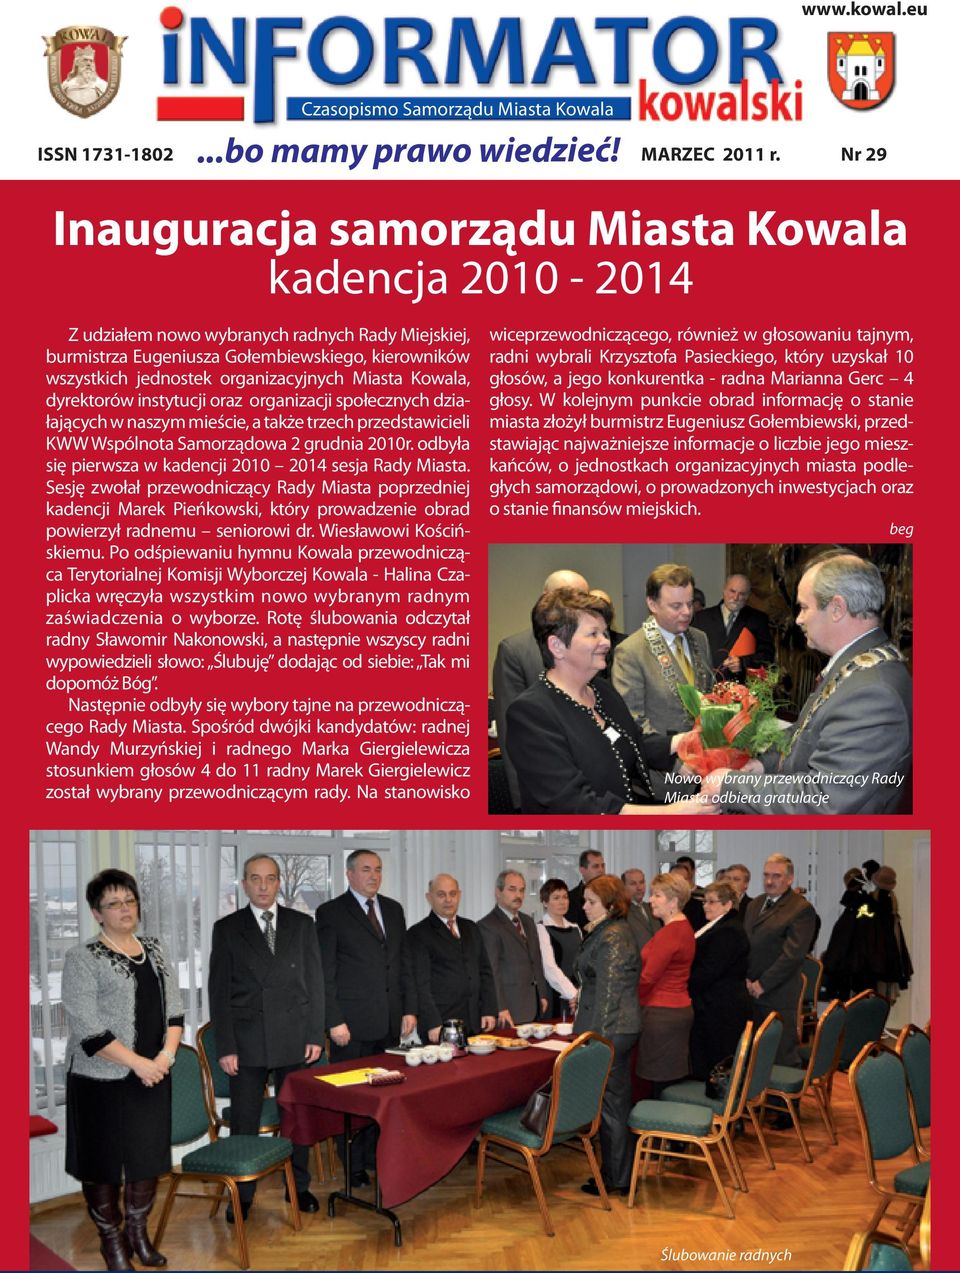 Kowala, dyrektorów instytucji oraz organizacji społecznych działających w naszym mieście, a także trzech przedstawicieli KWW Wspólnota Samorządowa 2 grudnia 2010r.